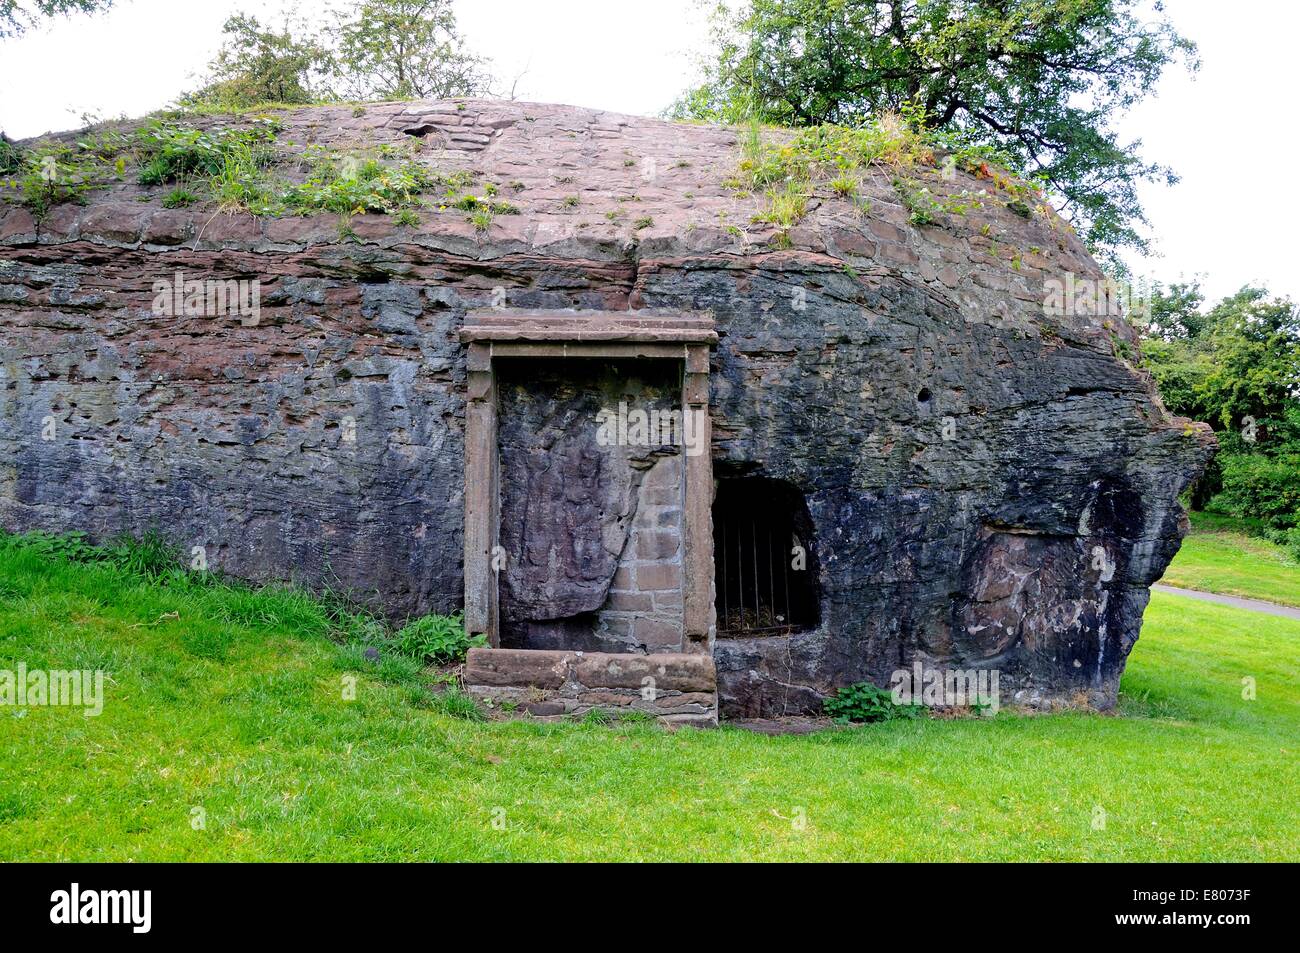 Architektur Detail der römischen Ruine Minervas Schrein in Edgars Feld Park, Chester, Cheshire, England, Vereinigtes Königreich, West-Europa. Stockfoto